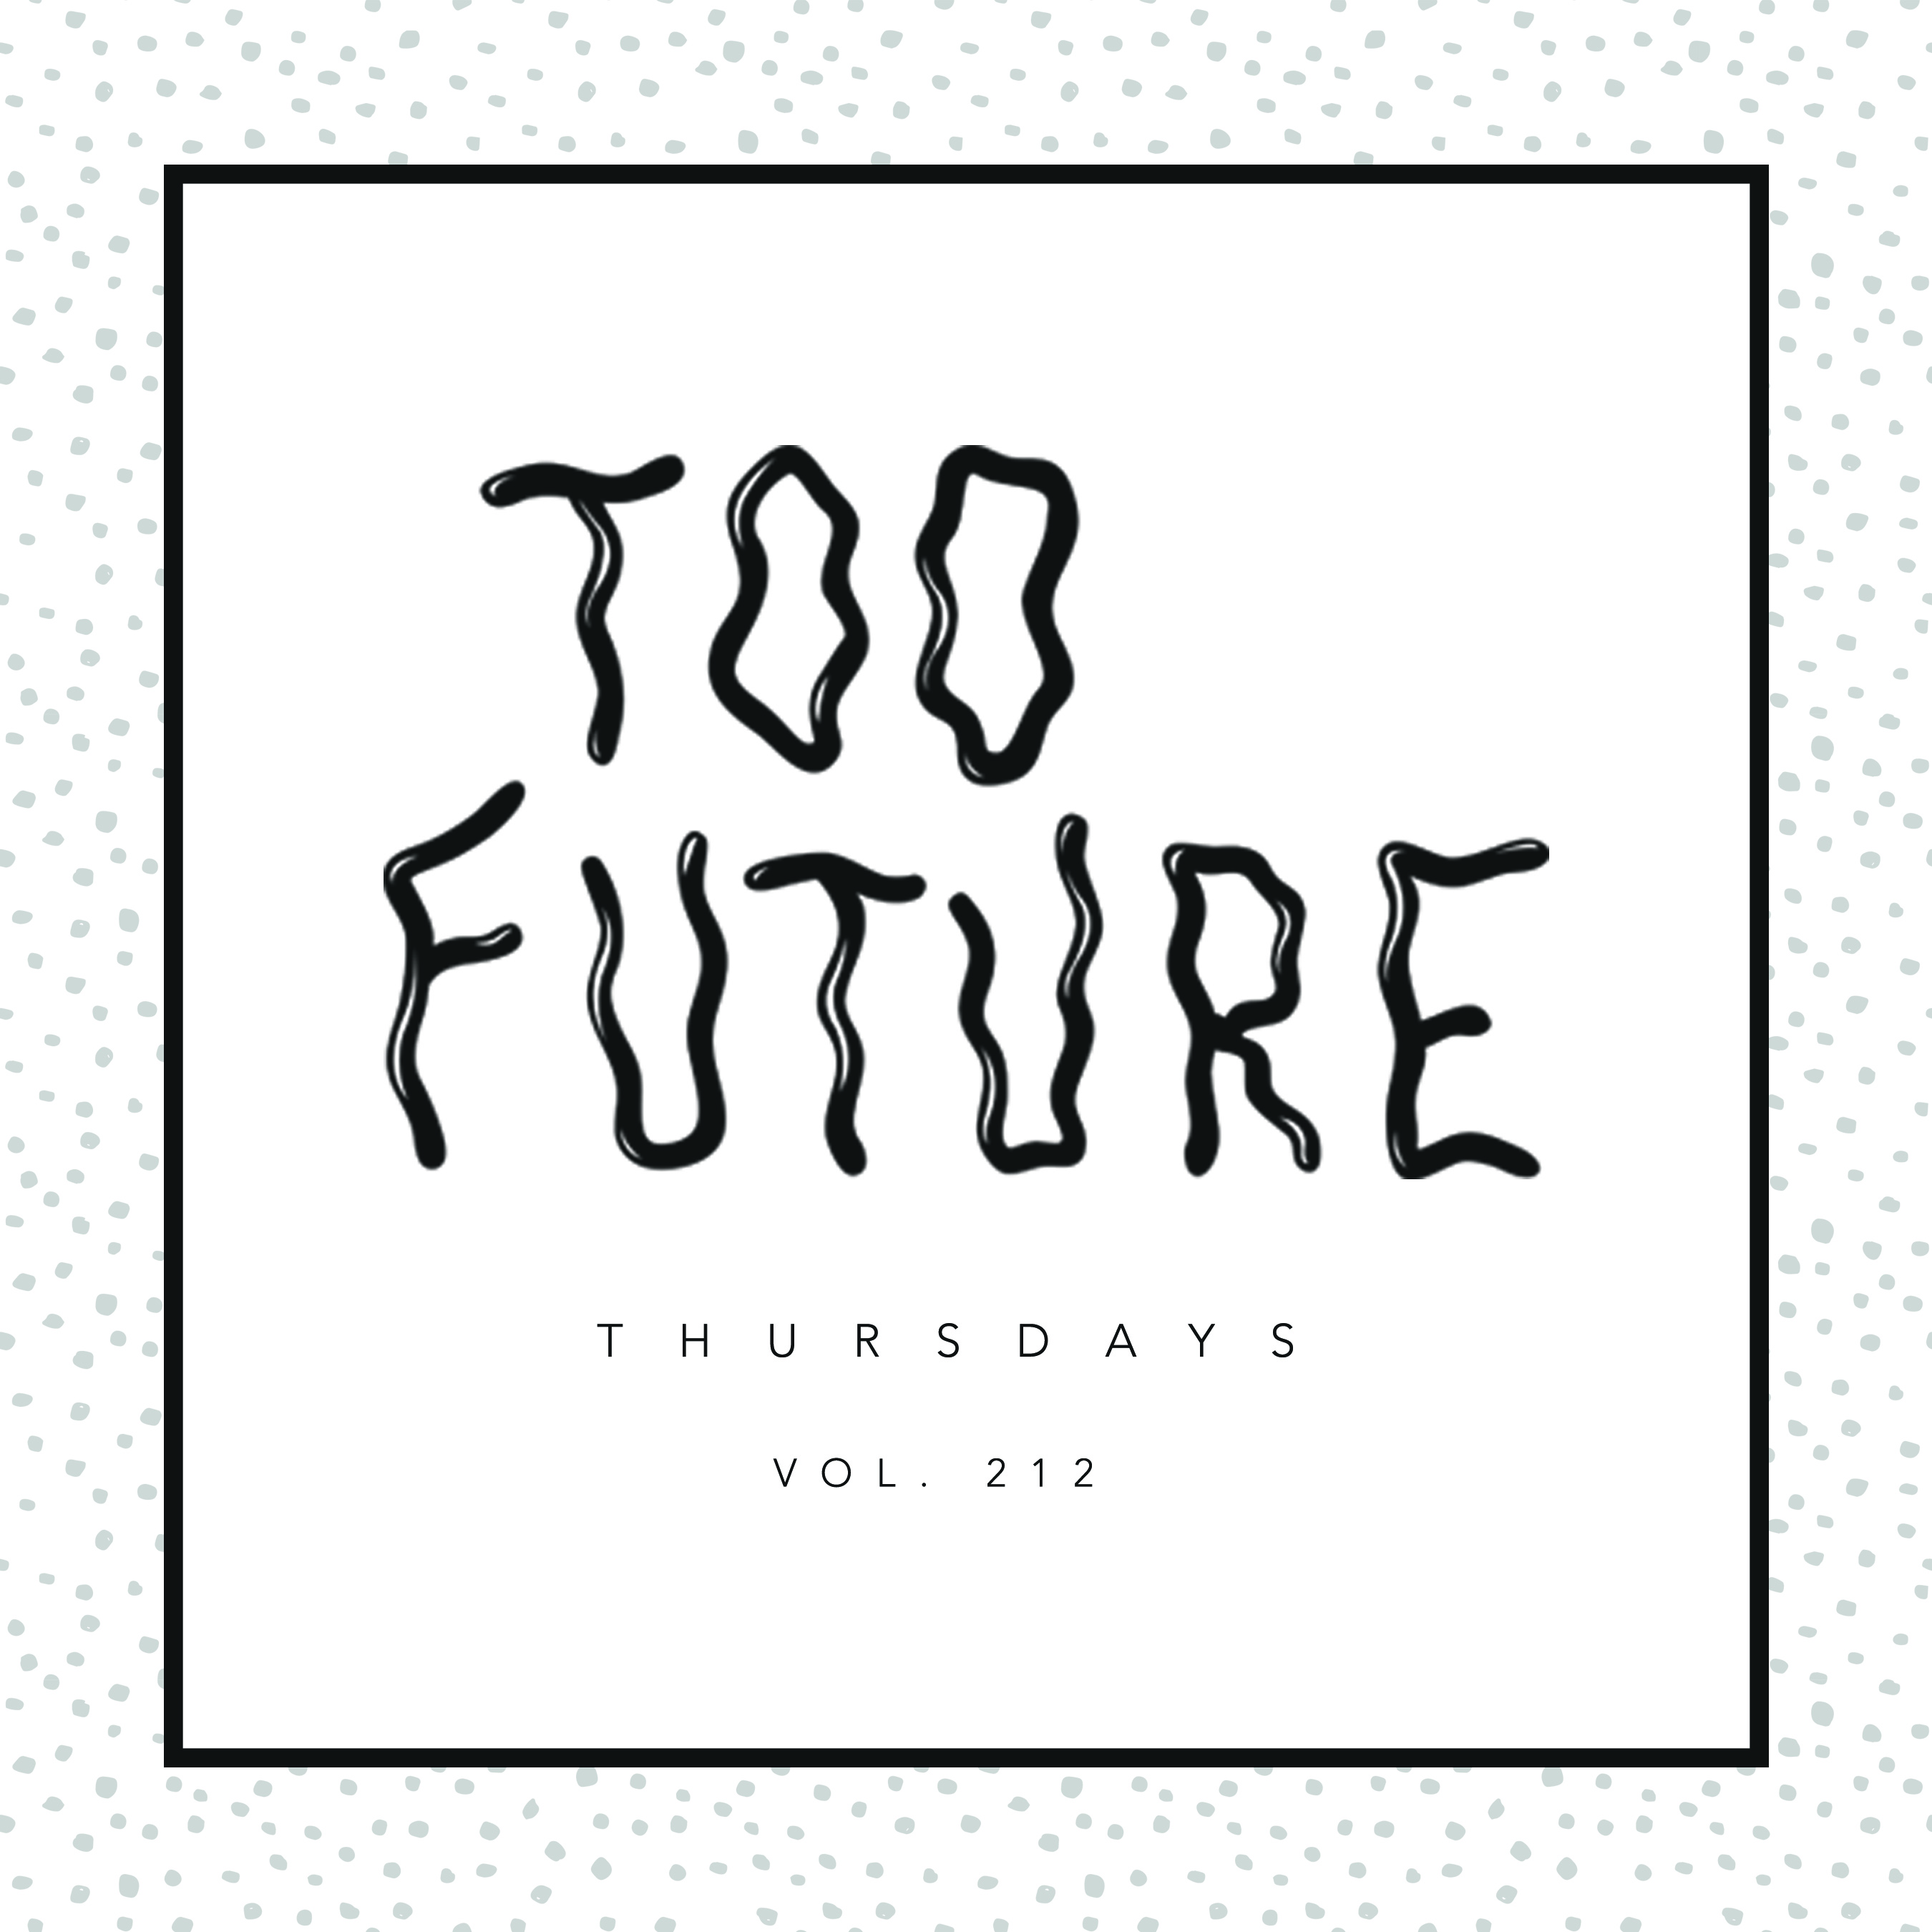 too-future-thursdays-vol-212